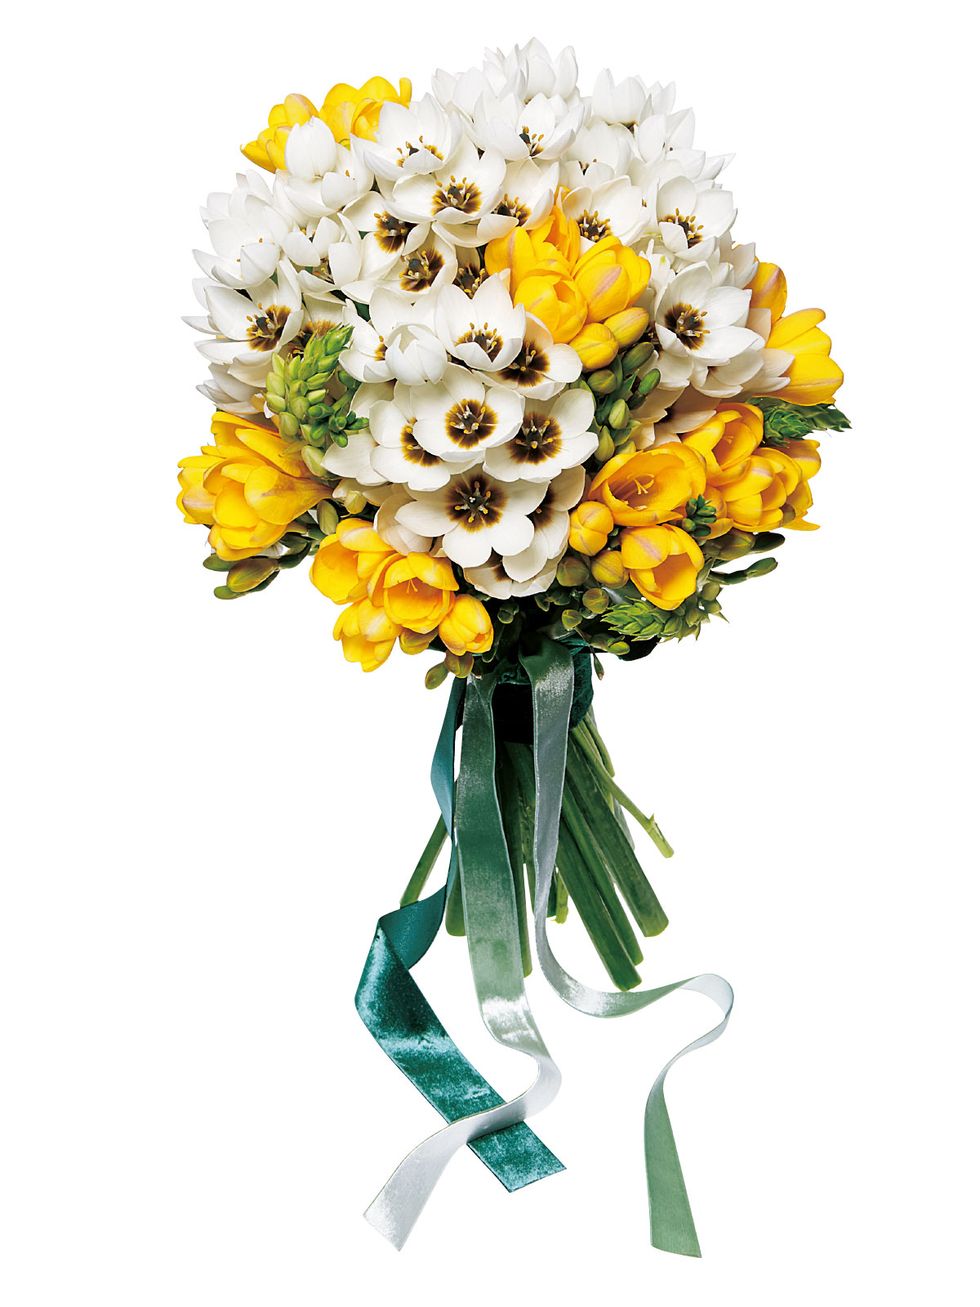 Flower, Bouquet, Flowering plant, Cut flowers, Plant, Yellow, Flowerpot, Floristry, Petal, Plant stem, 